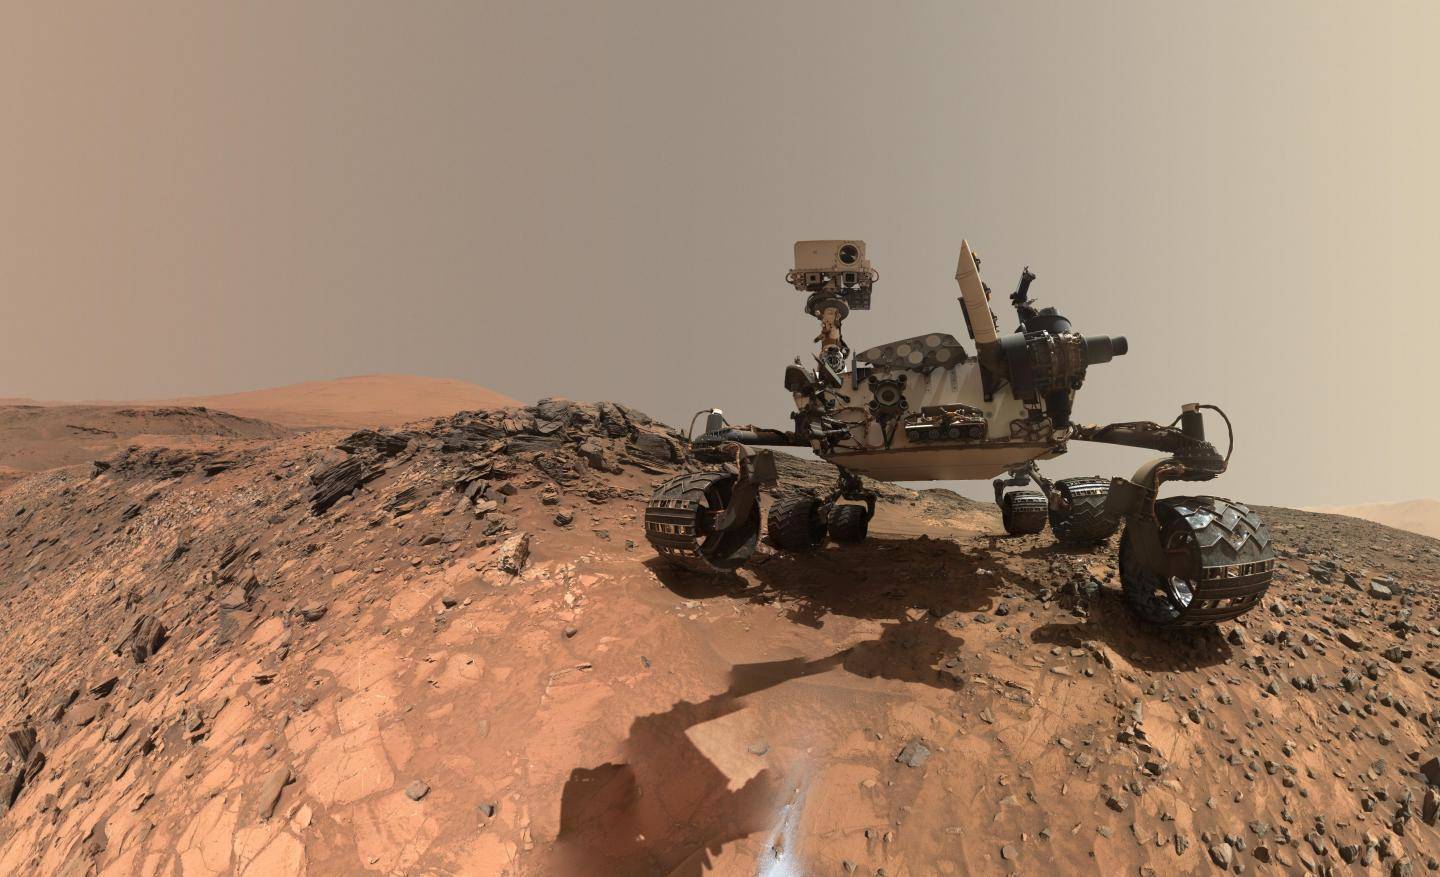 मंगल ग्रह पर किस मौसम में कैसा वातावरण रहता है? जानिए यहां पर